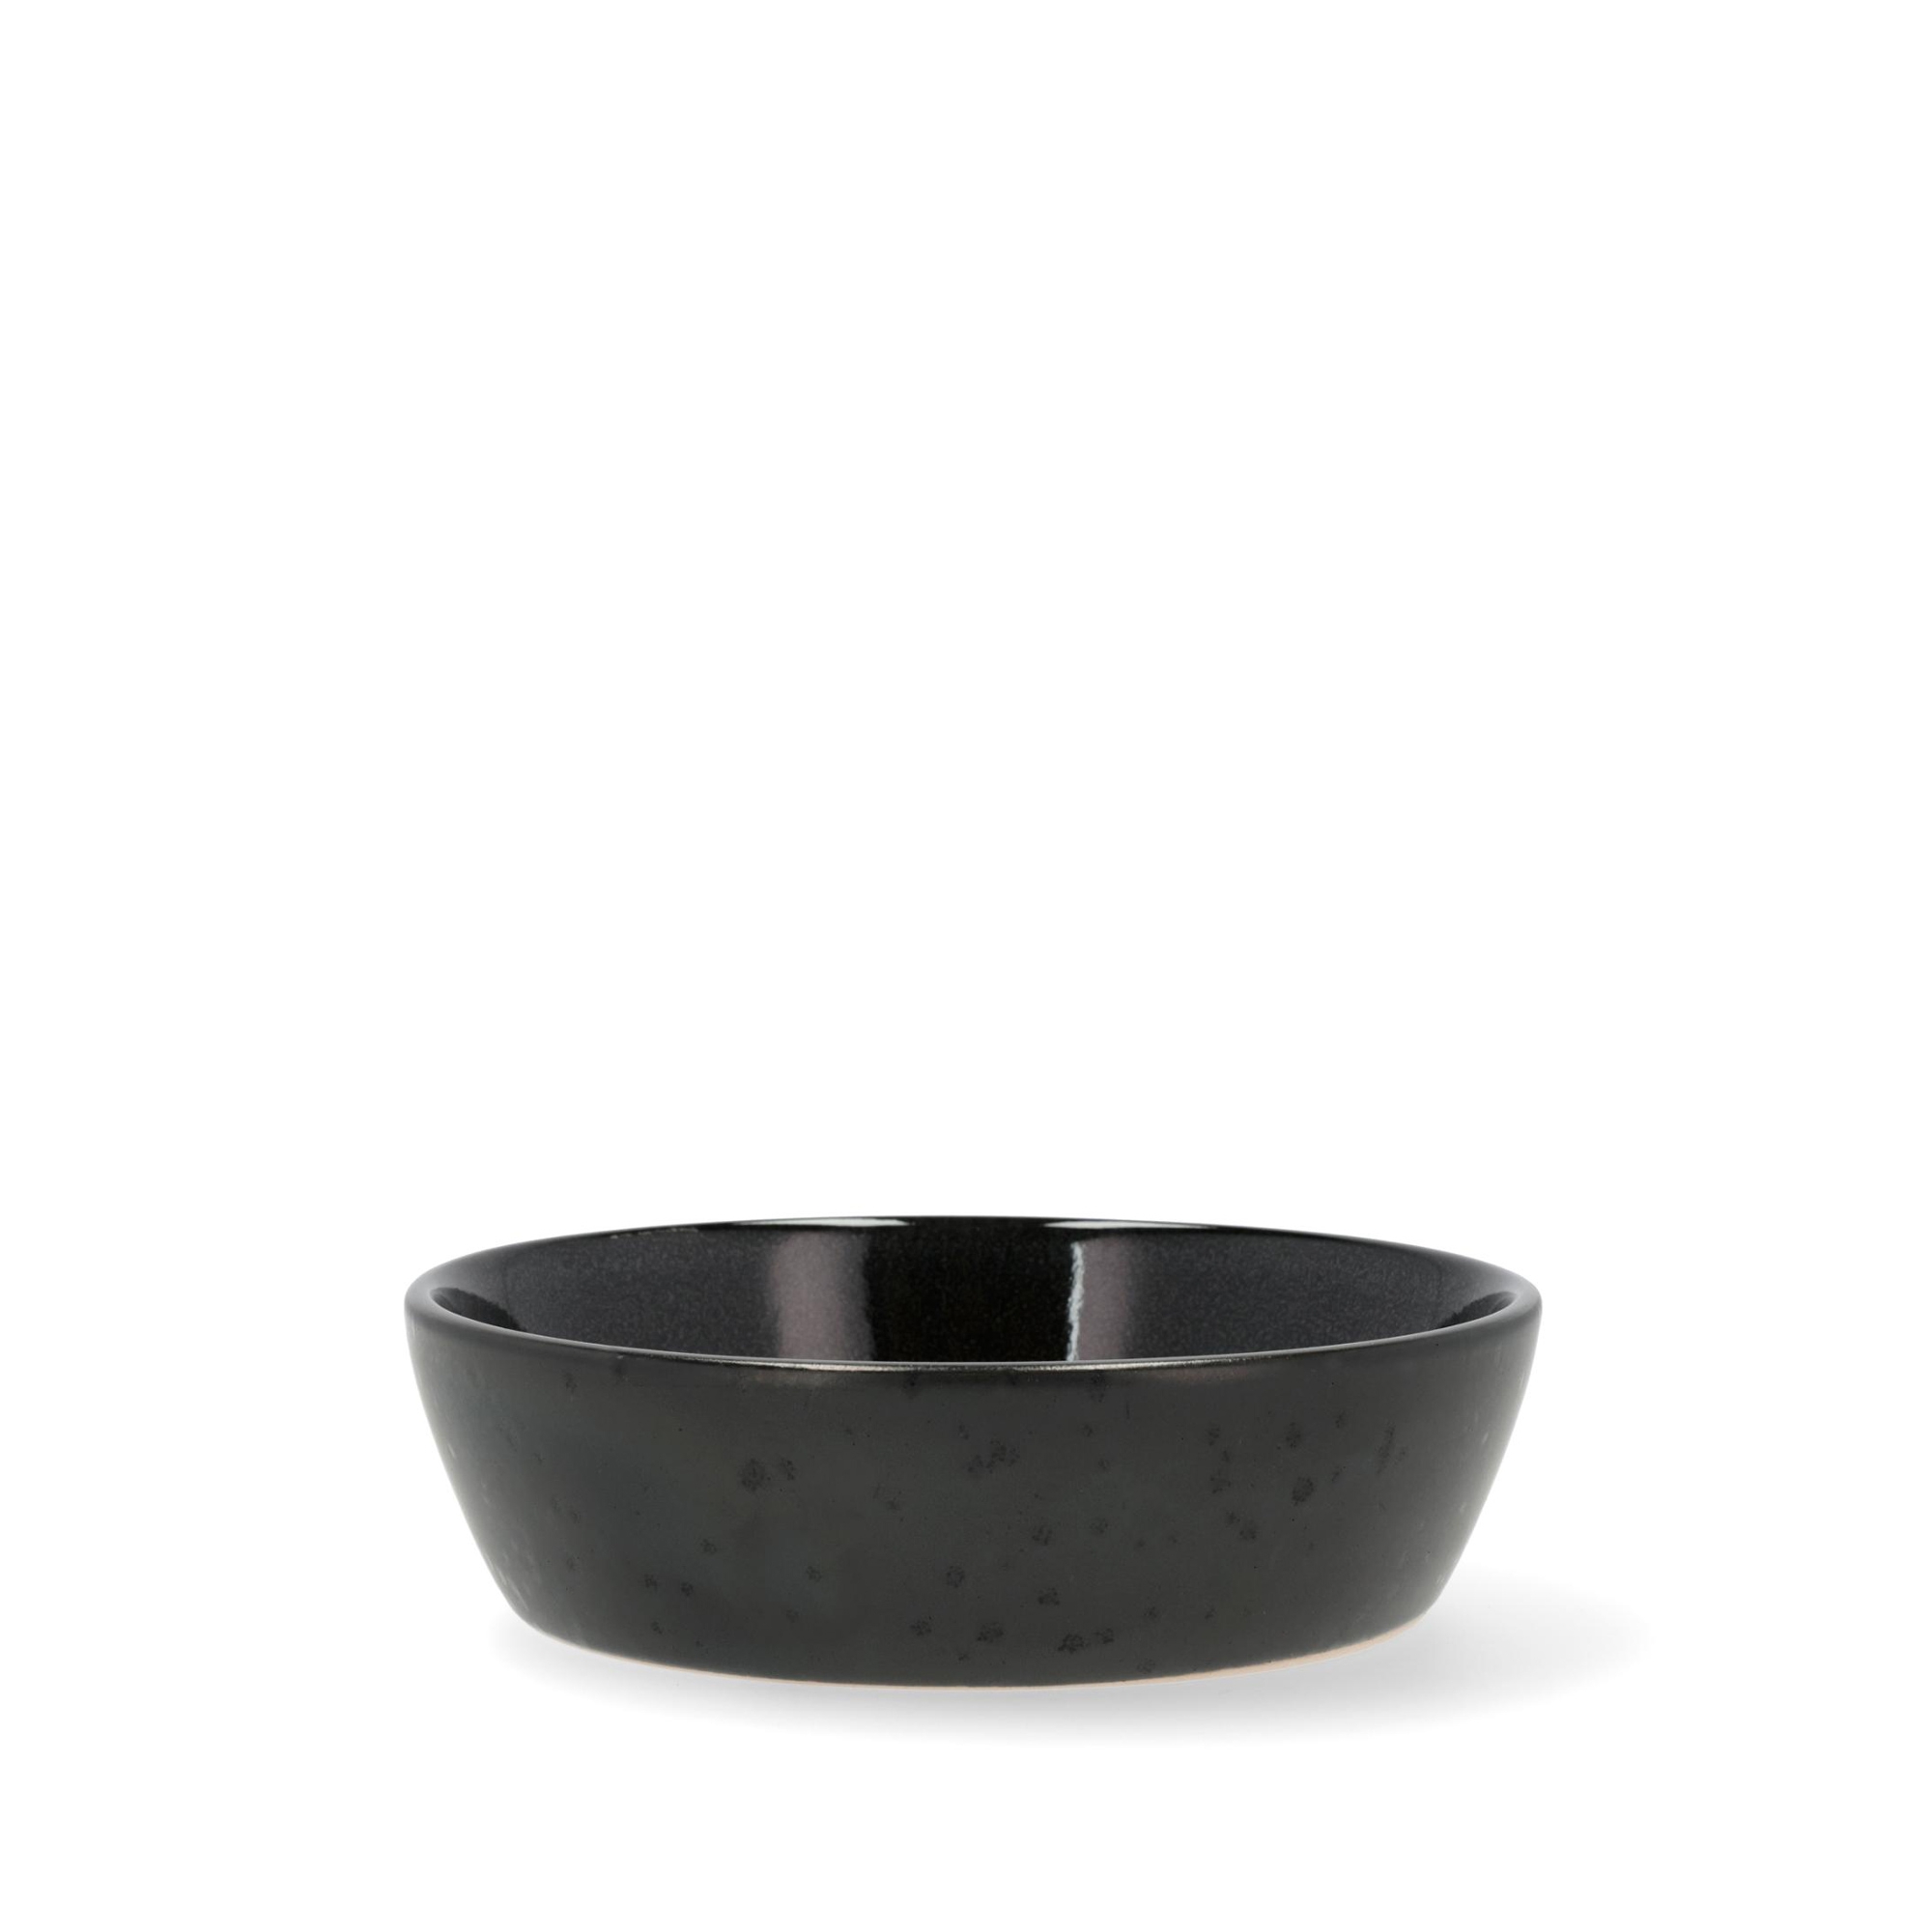 Bitz - Soup bowl - 18 cm